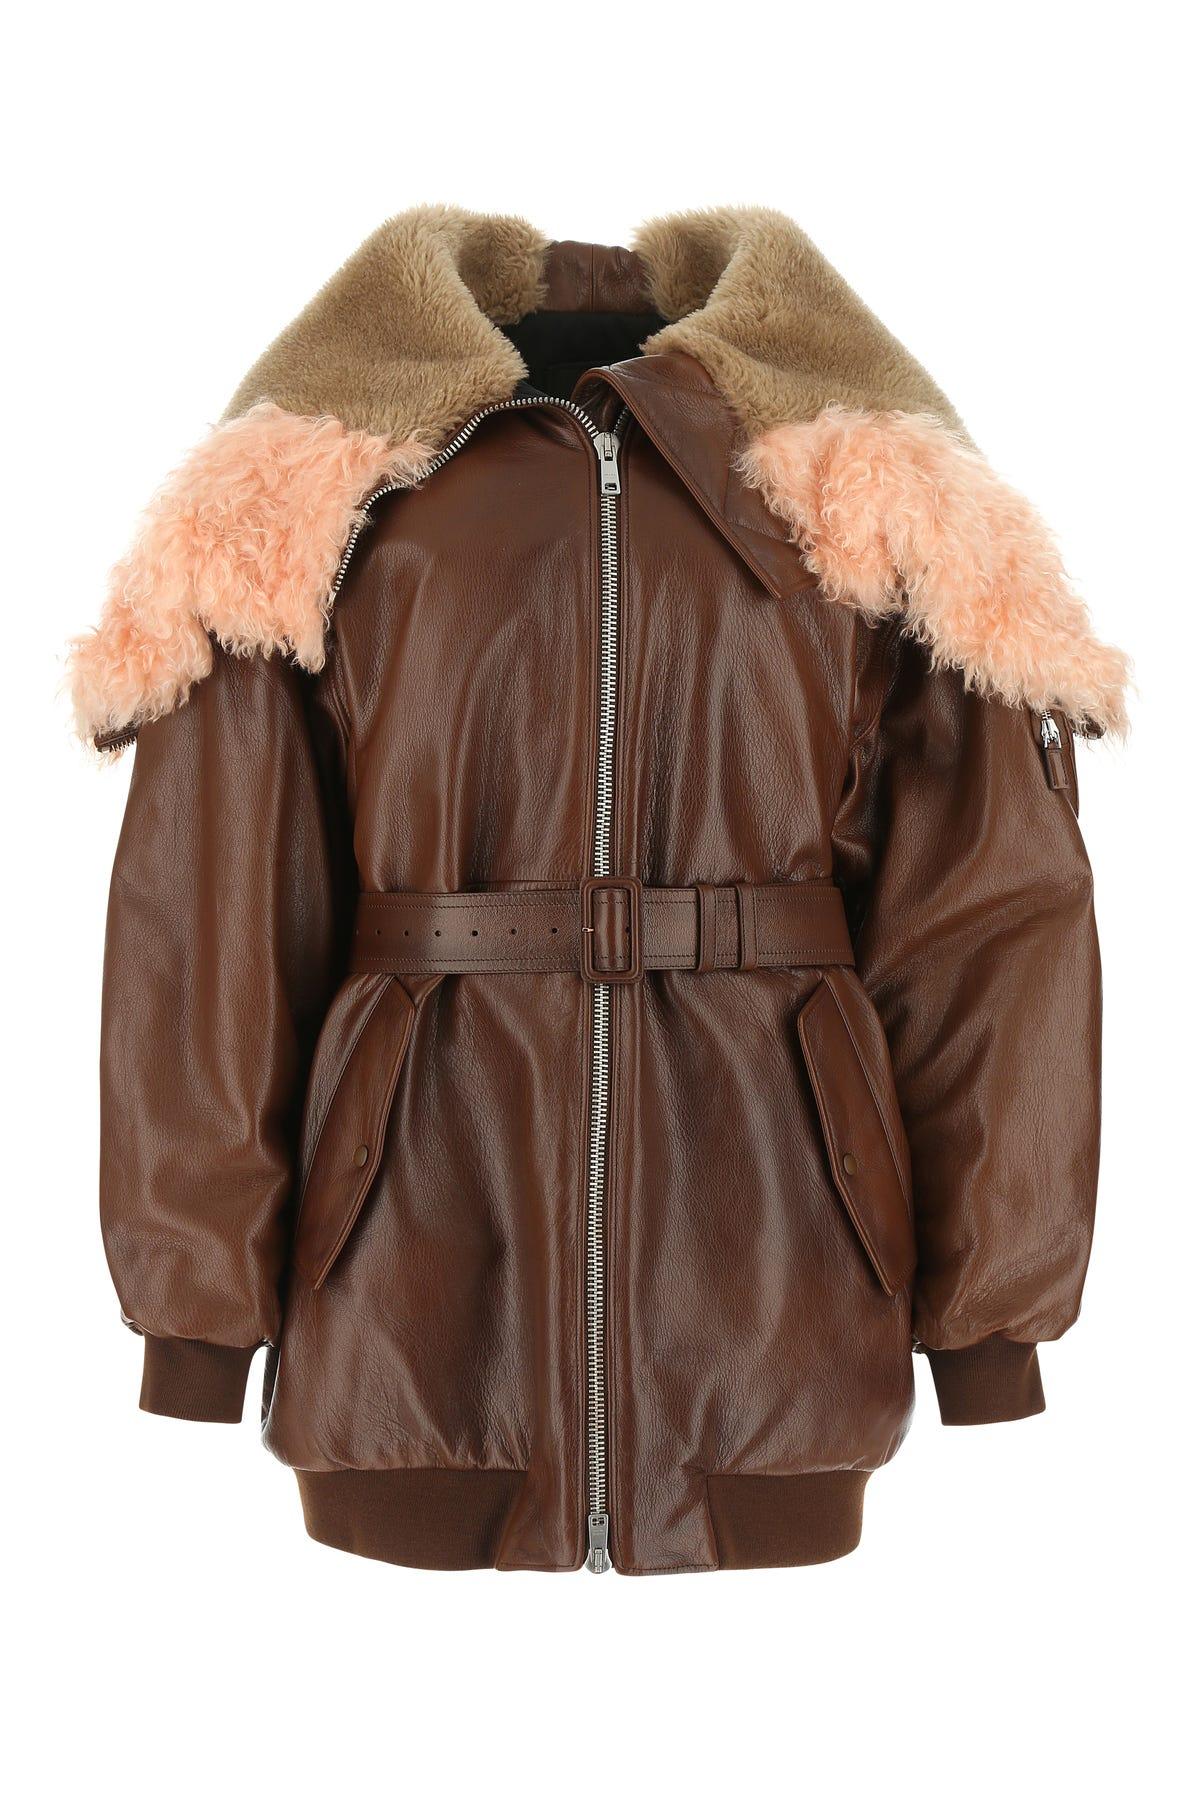 Prada Zip-up Embellished Trim Jacket in Brown | Lyst